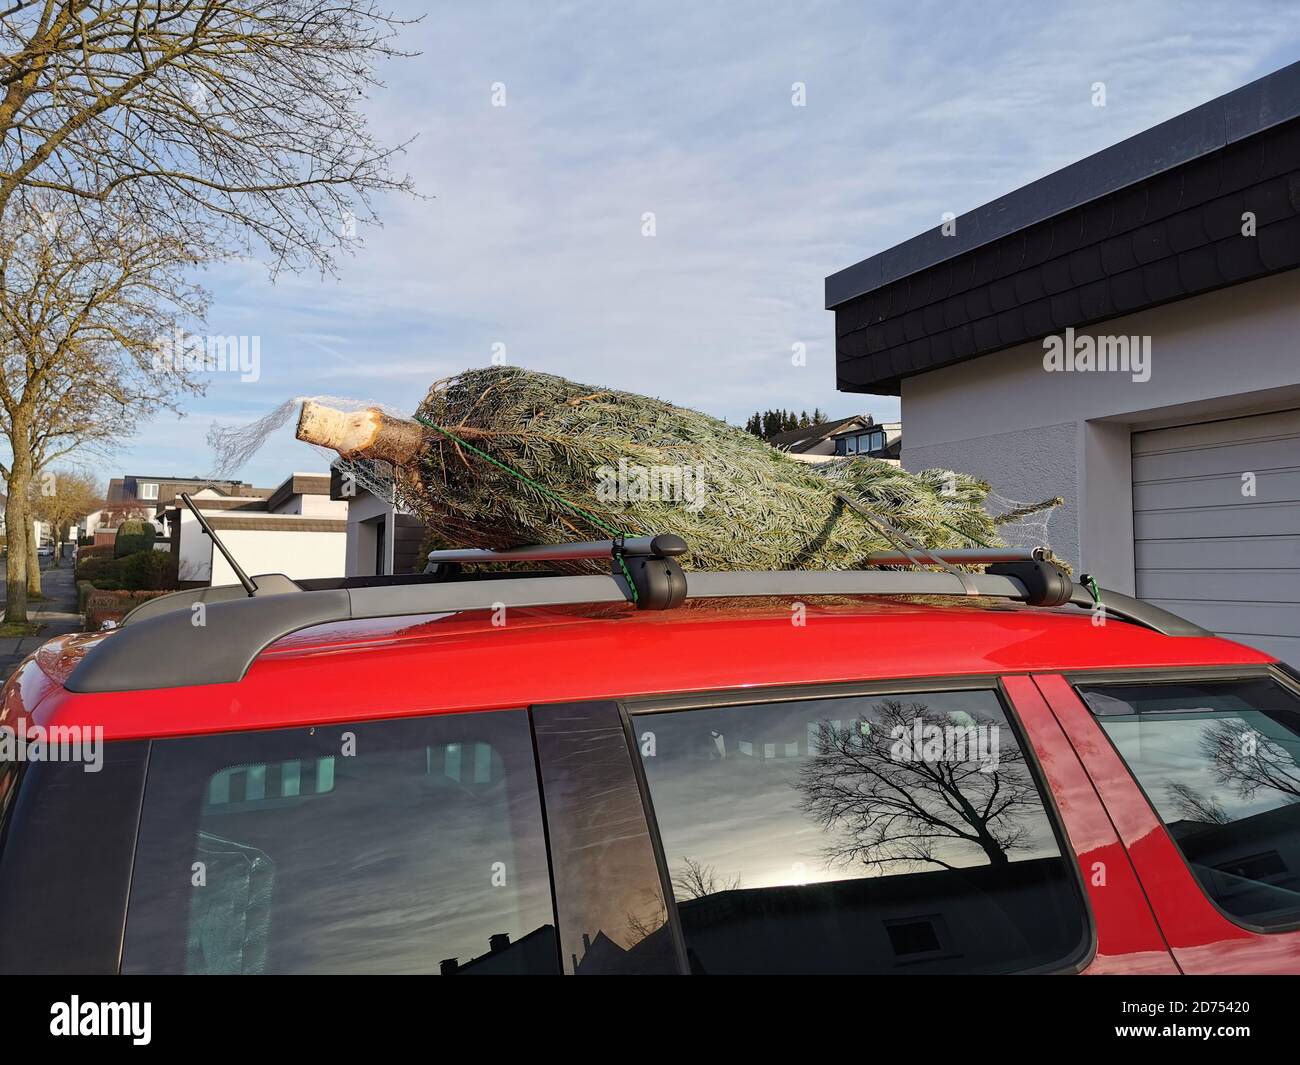 Un arbre de Noël frais du vendeur est transporté à la maison sur le toit d'une voiture. La voiture rouge offre un contraste agréable à l'arbre. C'est la saison de l'AVENT. Banque D'Images